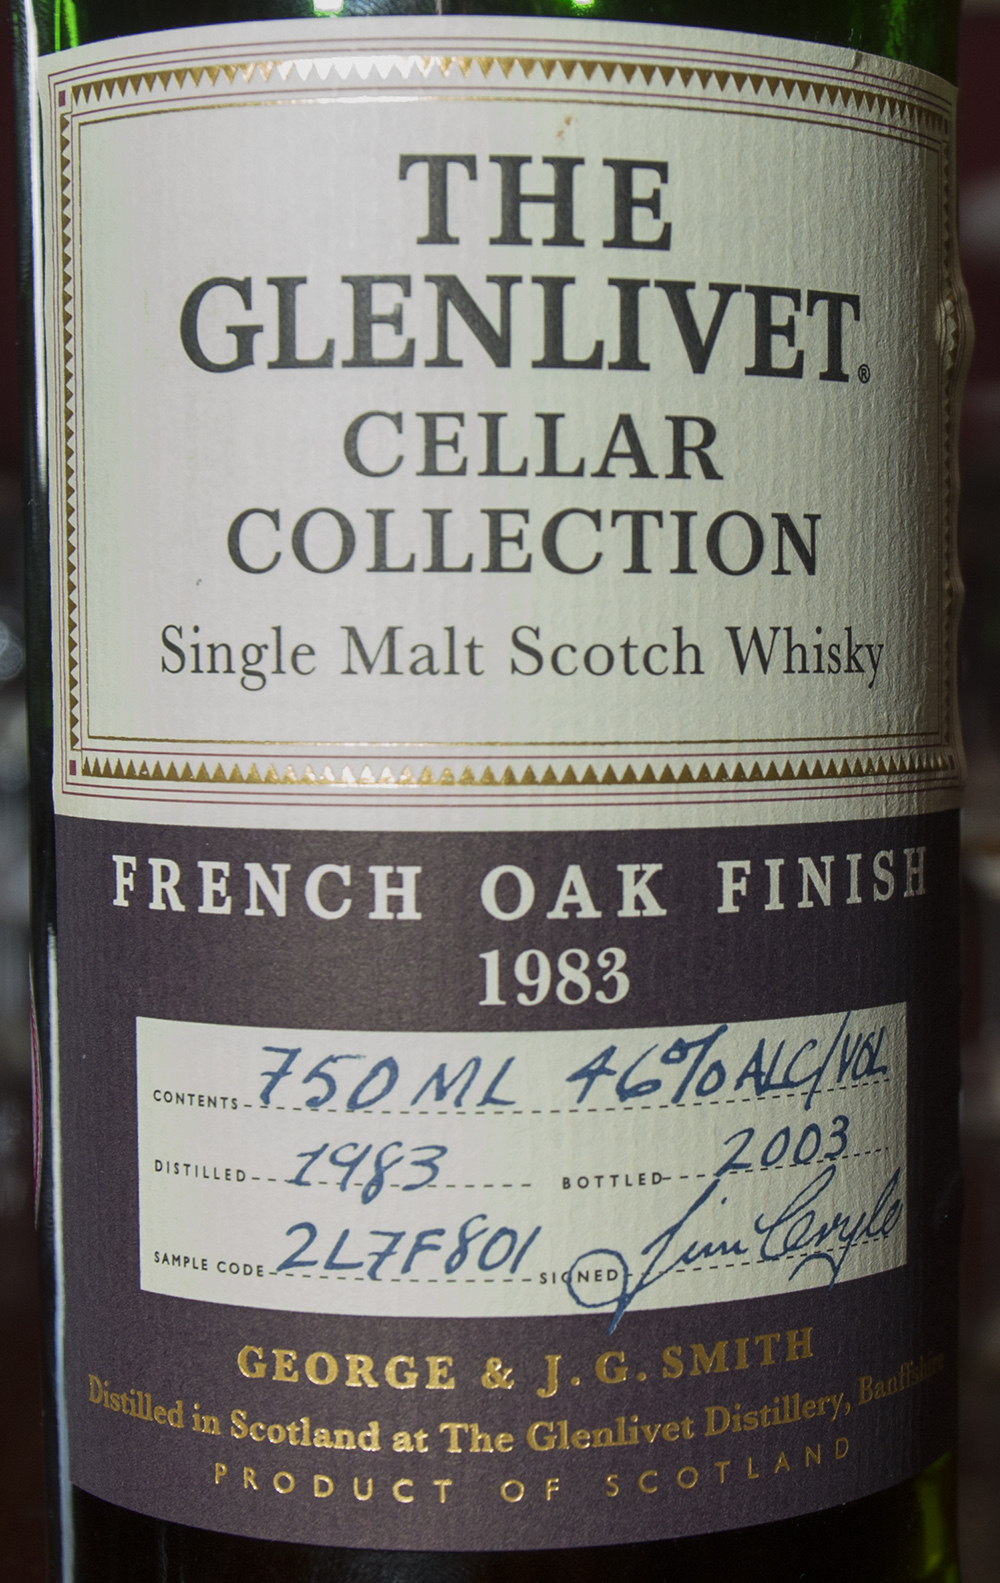 Billede: DSC_1025 The Glenlivet Cellar Collection French Oak Finish 1983-2003.jpg